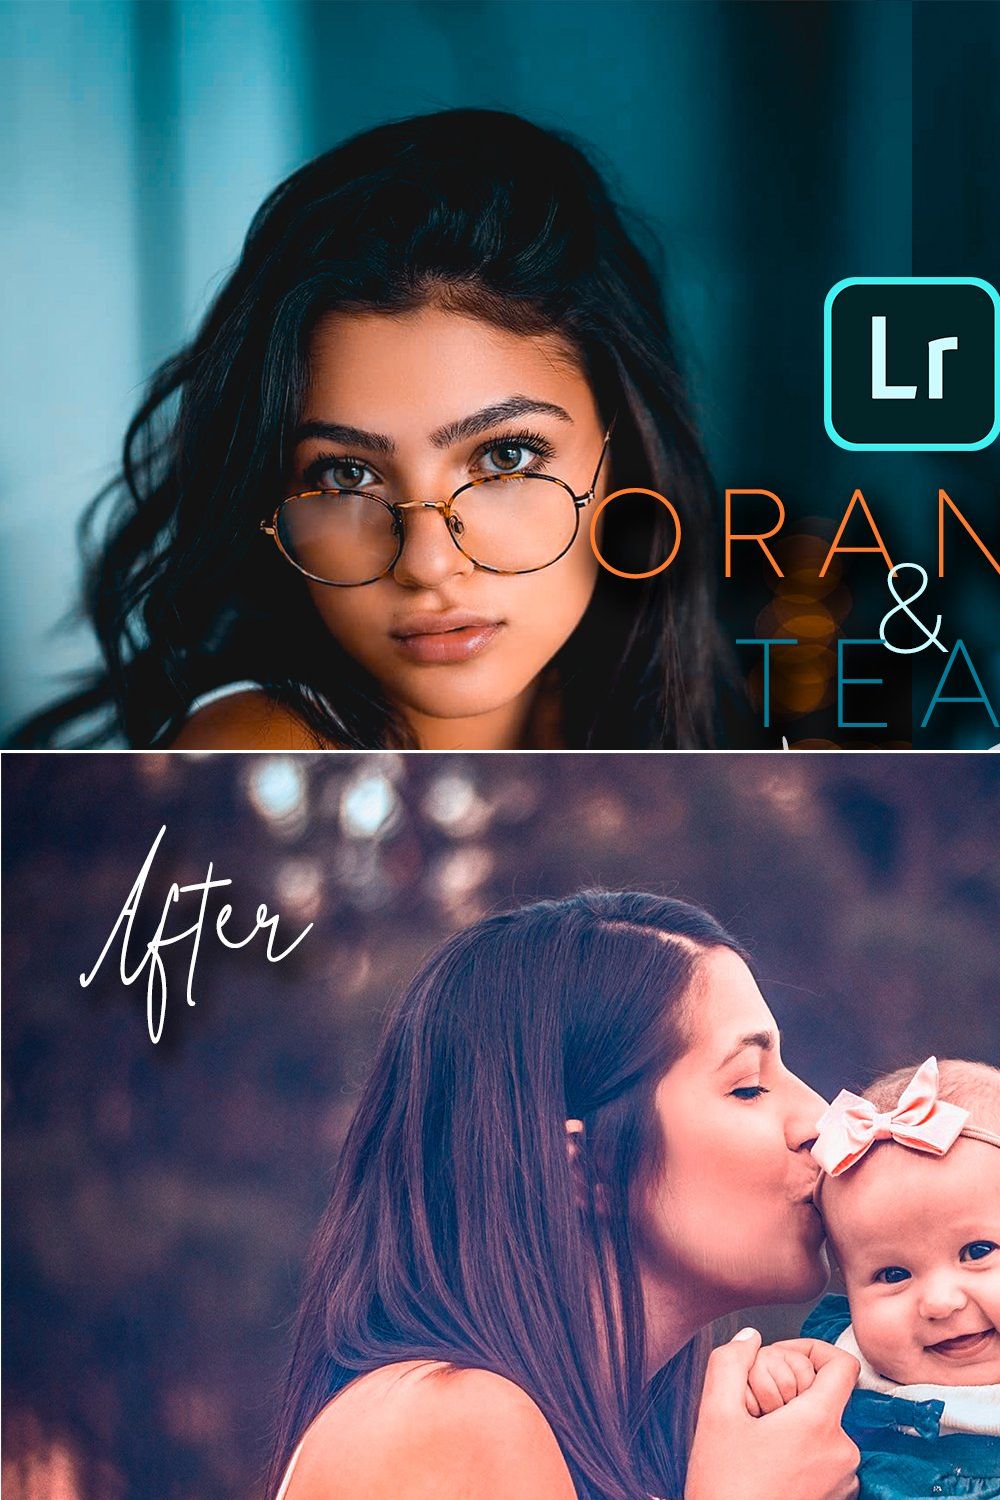 Orange & Teal Lightroom Presets pinterest preview image.